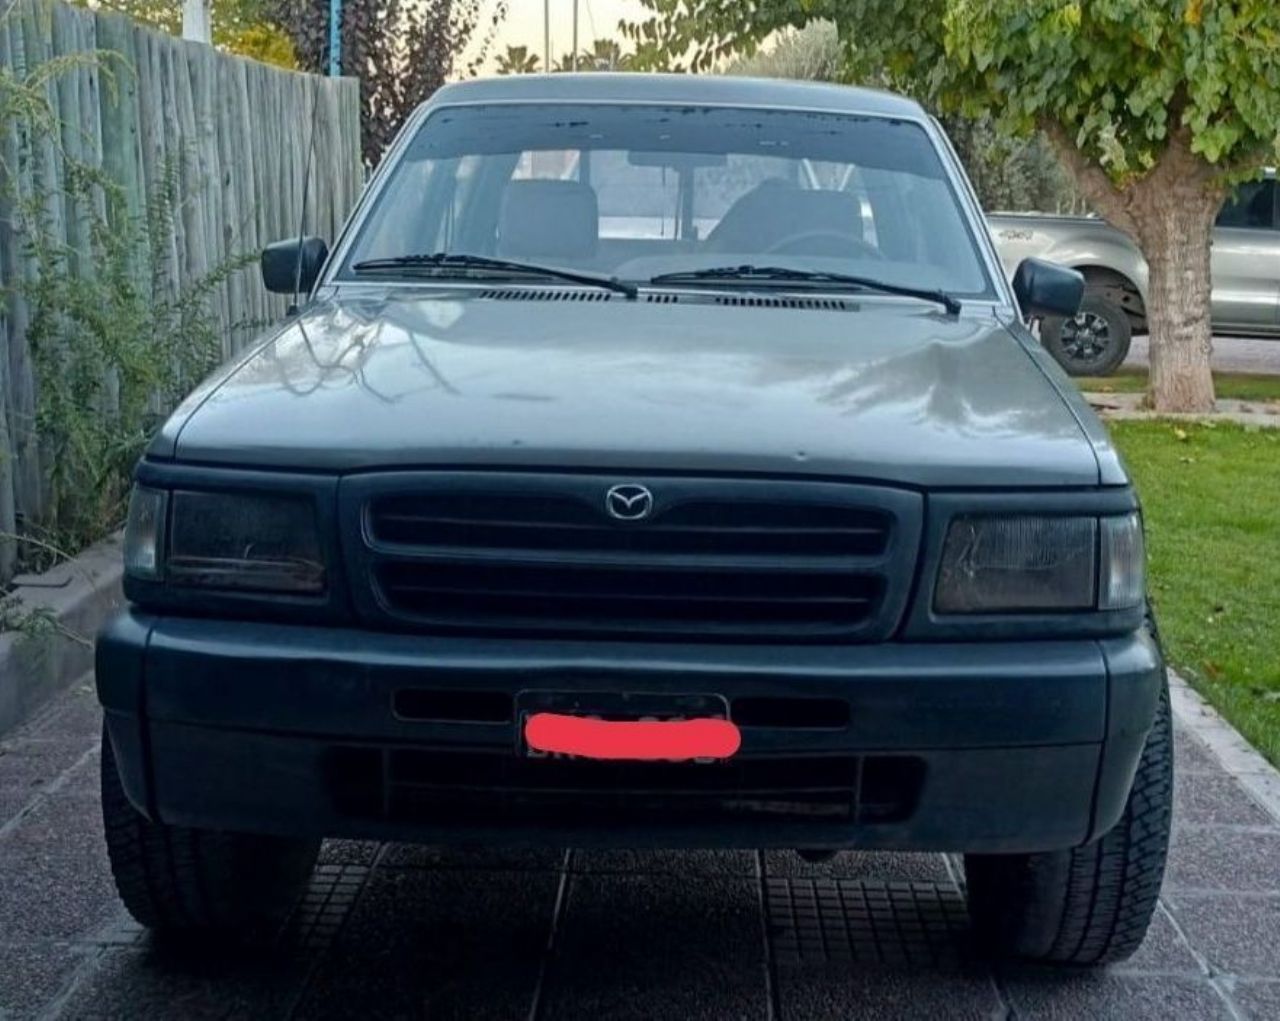 Mazda Pick-Up Usada en Mendoza, deRuedas